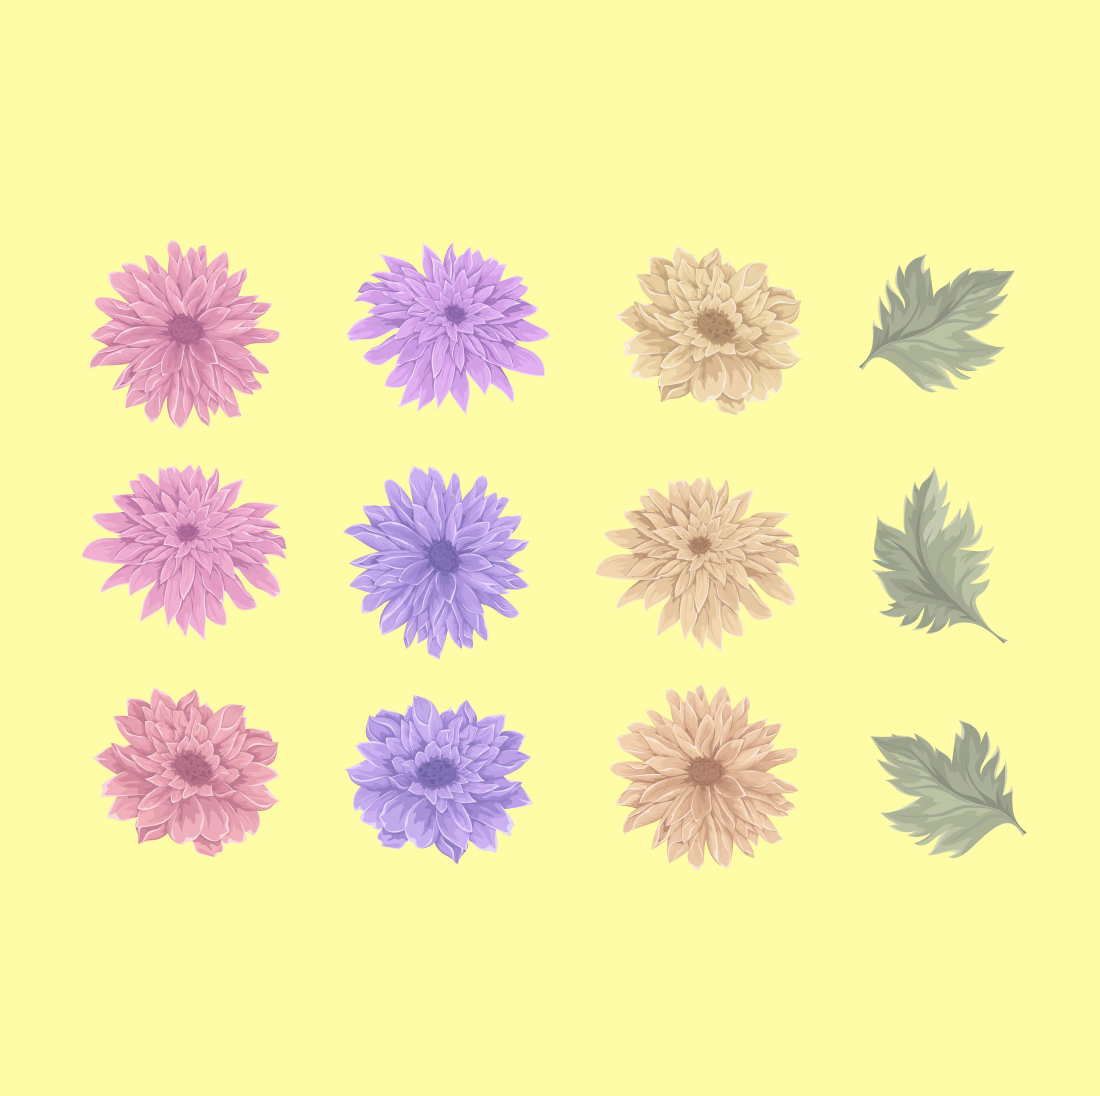 Chrysanthemum SVG cover.